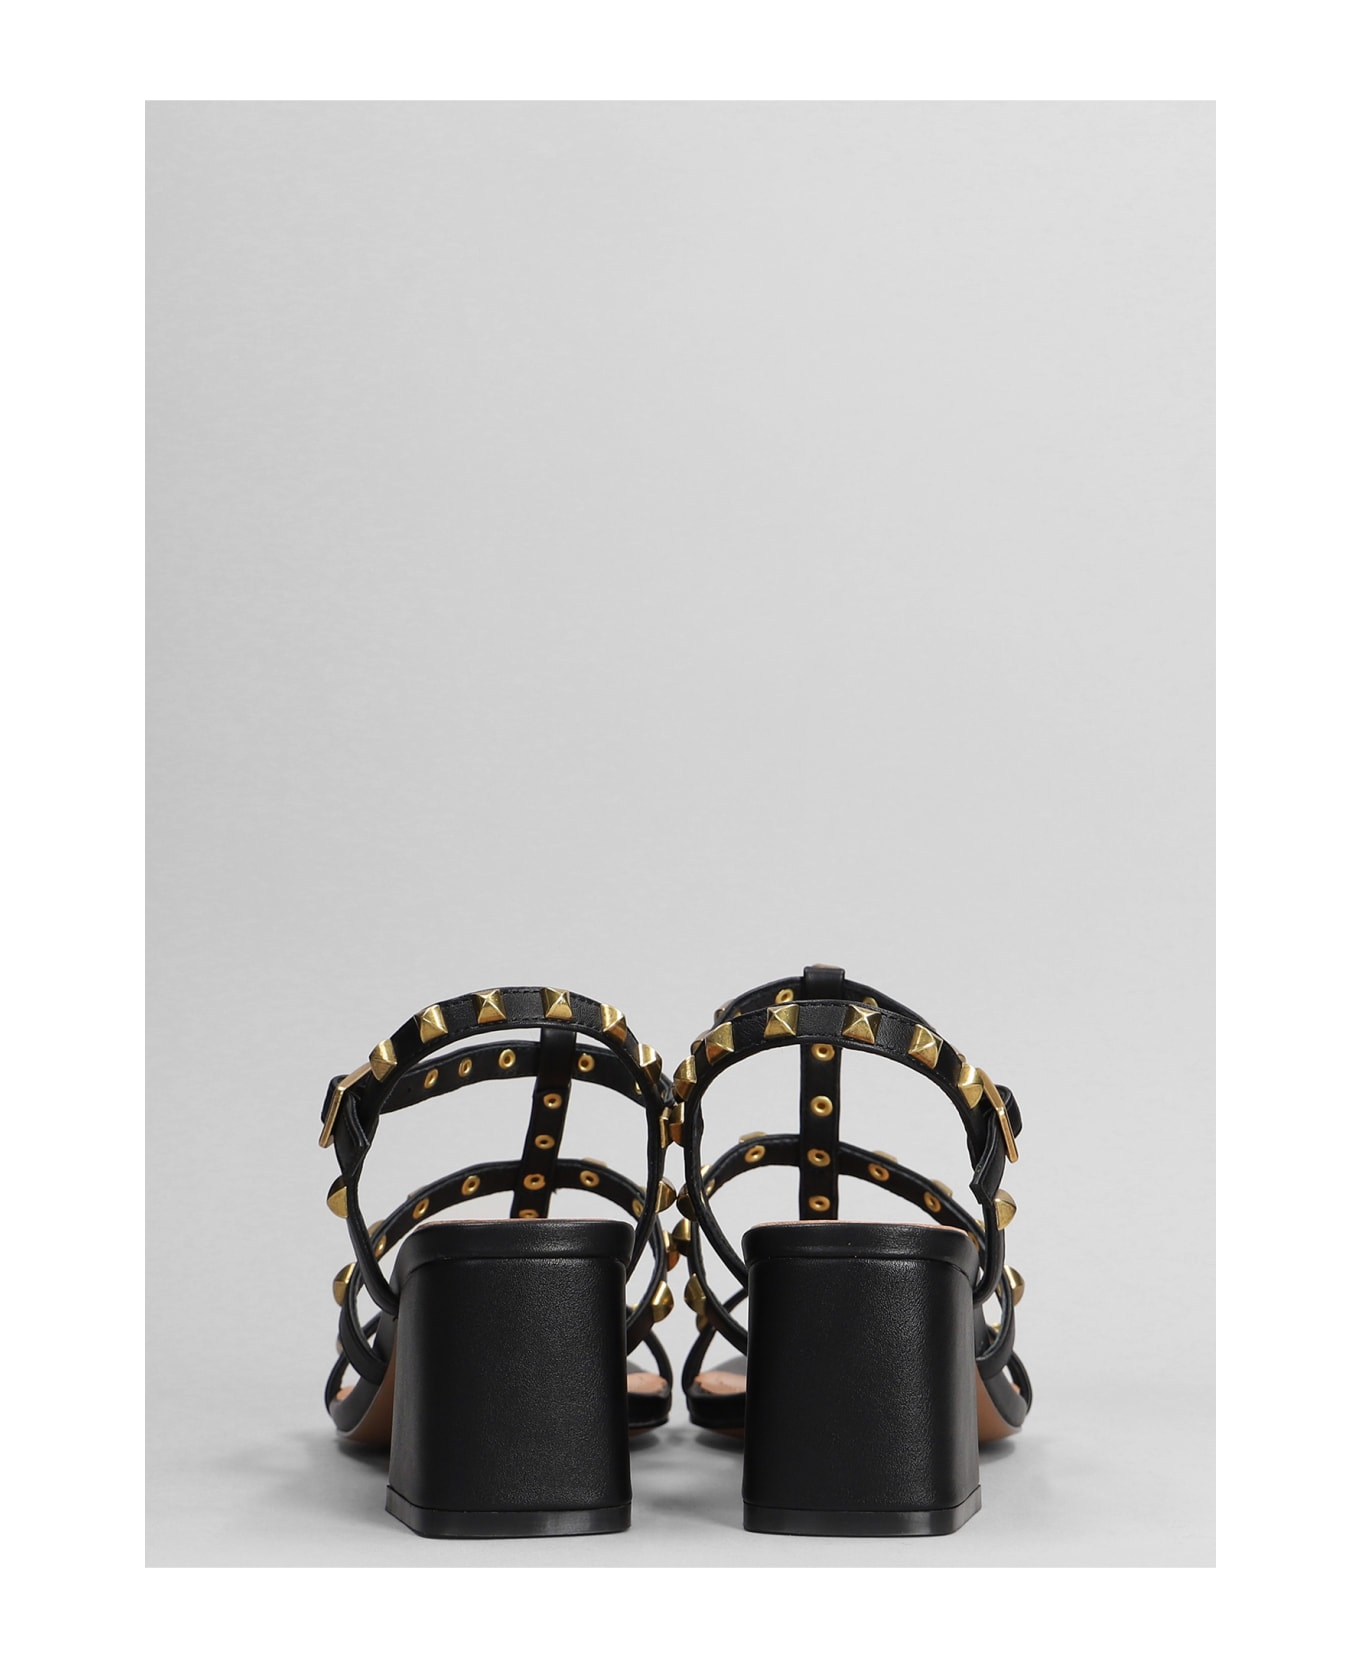 Bibi Lou Pend Sandals In Black Leather - black